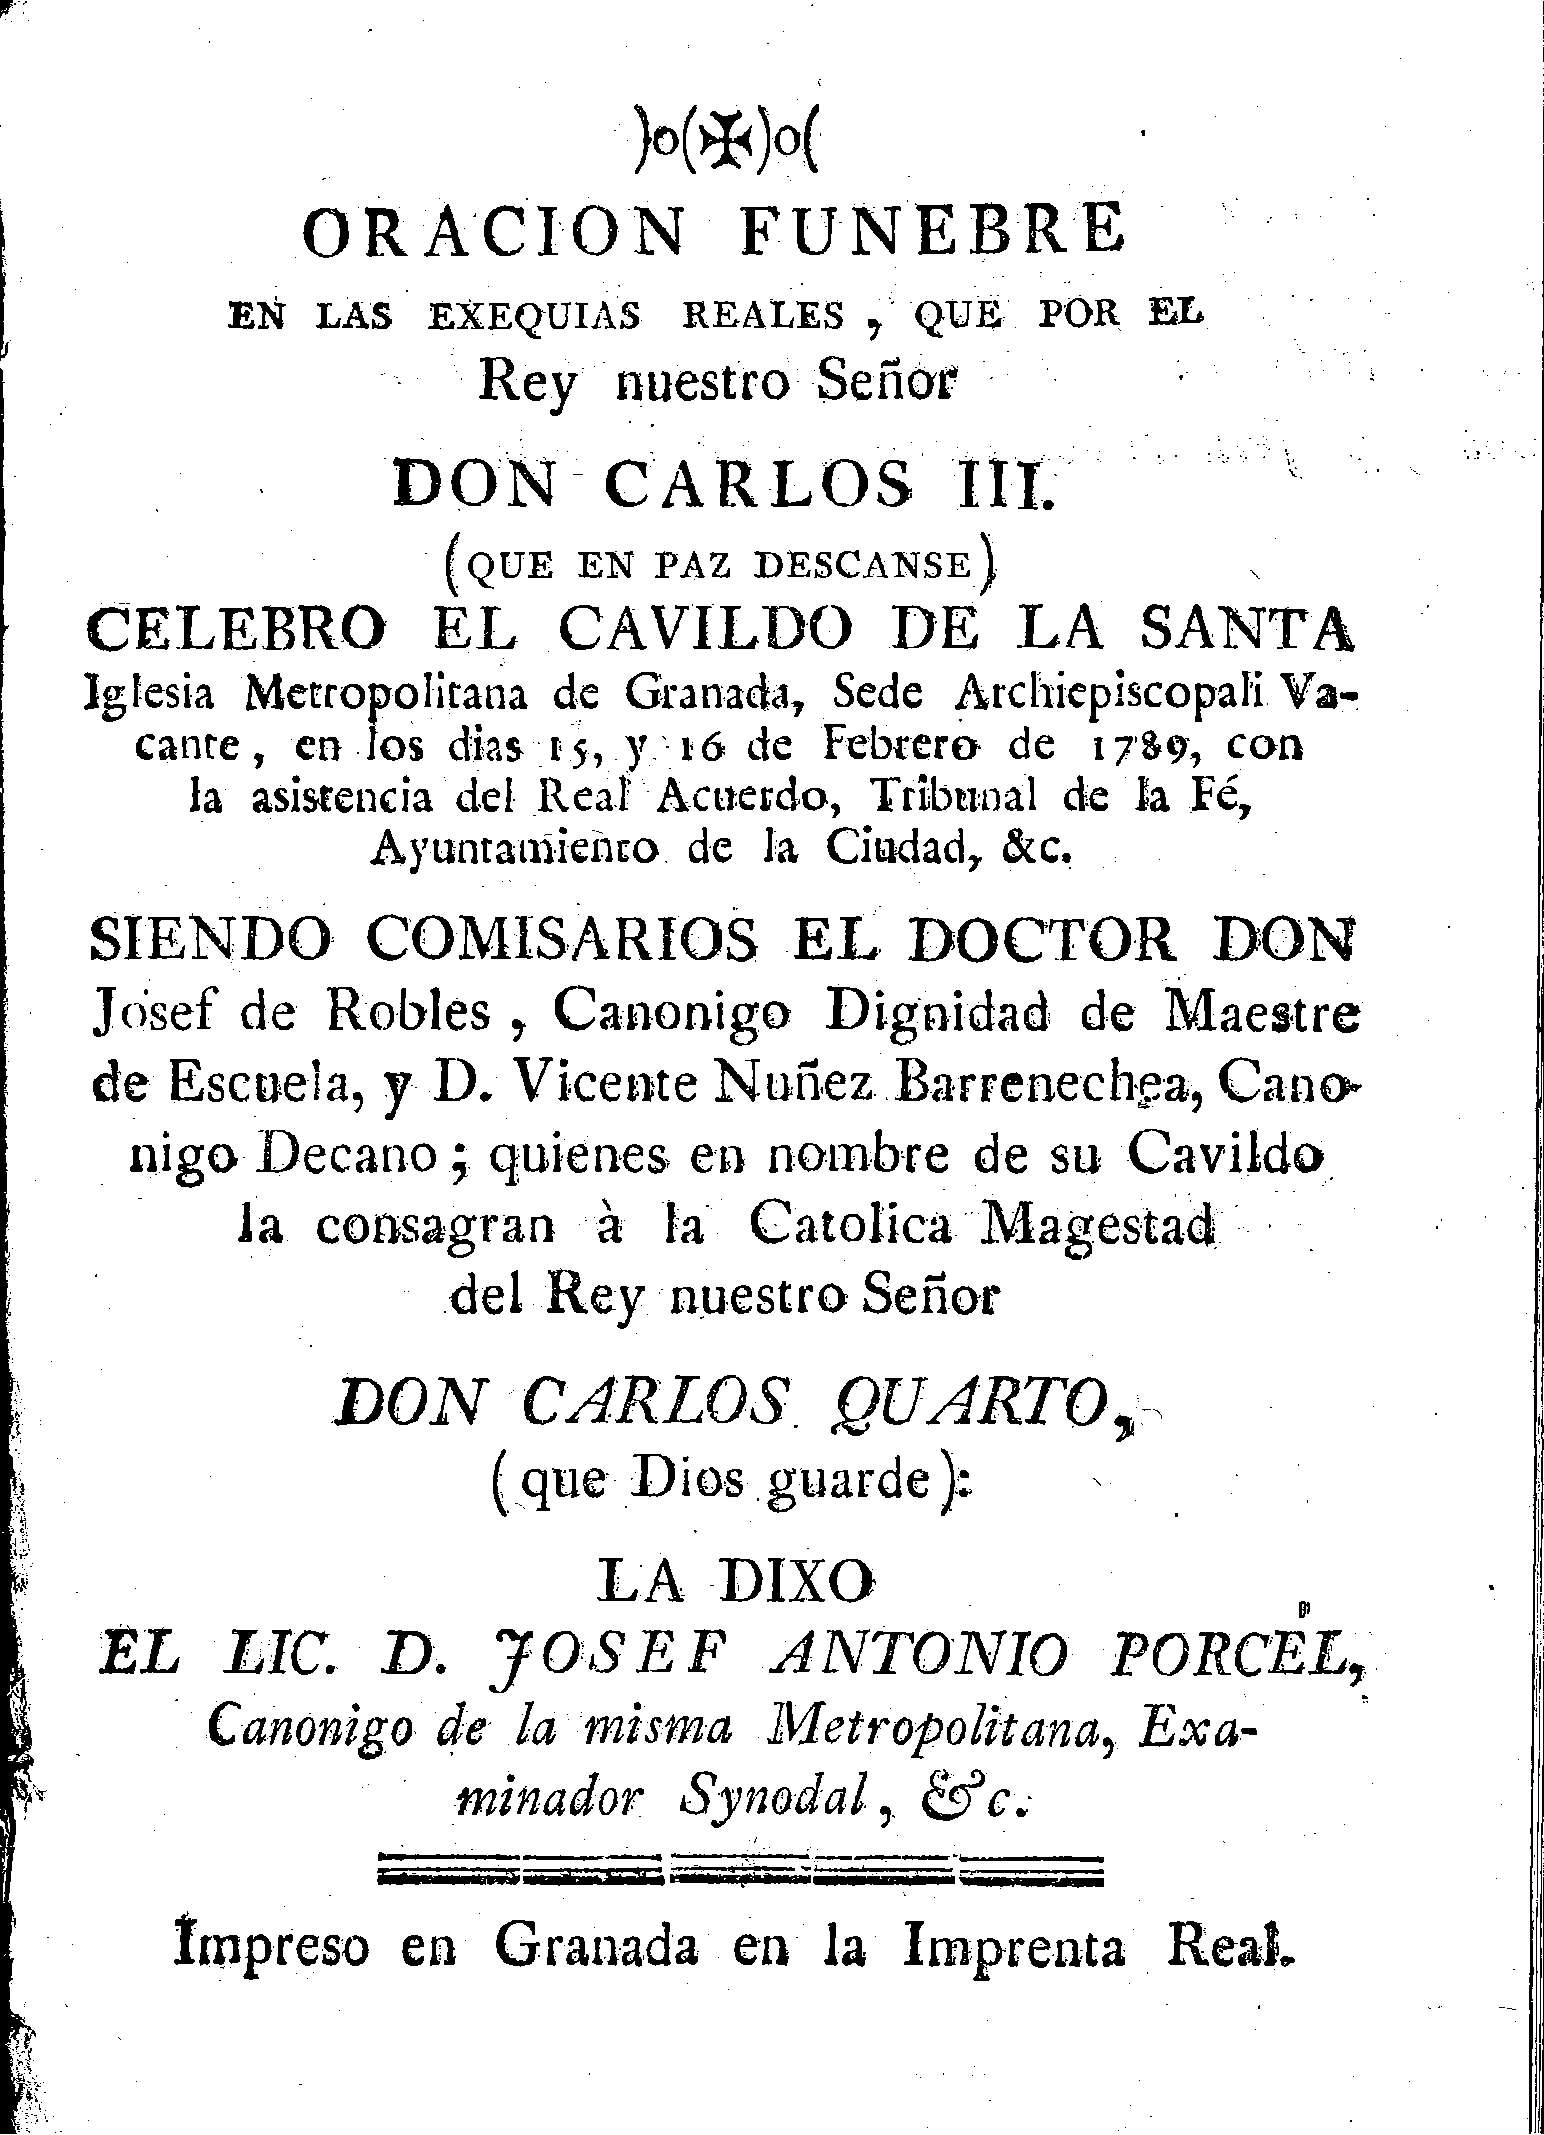 Oración fúnebre en las exequias reales que por el Rey nuestro Señor Don Carlos III ... celebró el cavildo de la Santa Iglesia Metropolitana de Granada ... , en los días 15 y 16 de febrero de 1789 ...